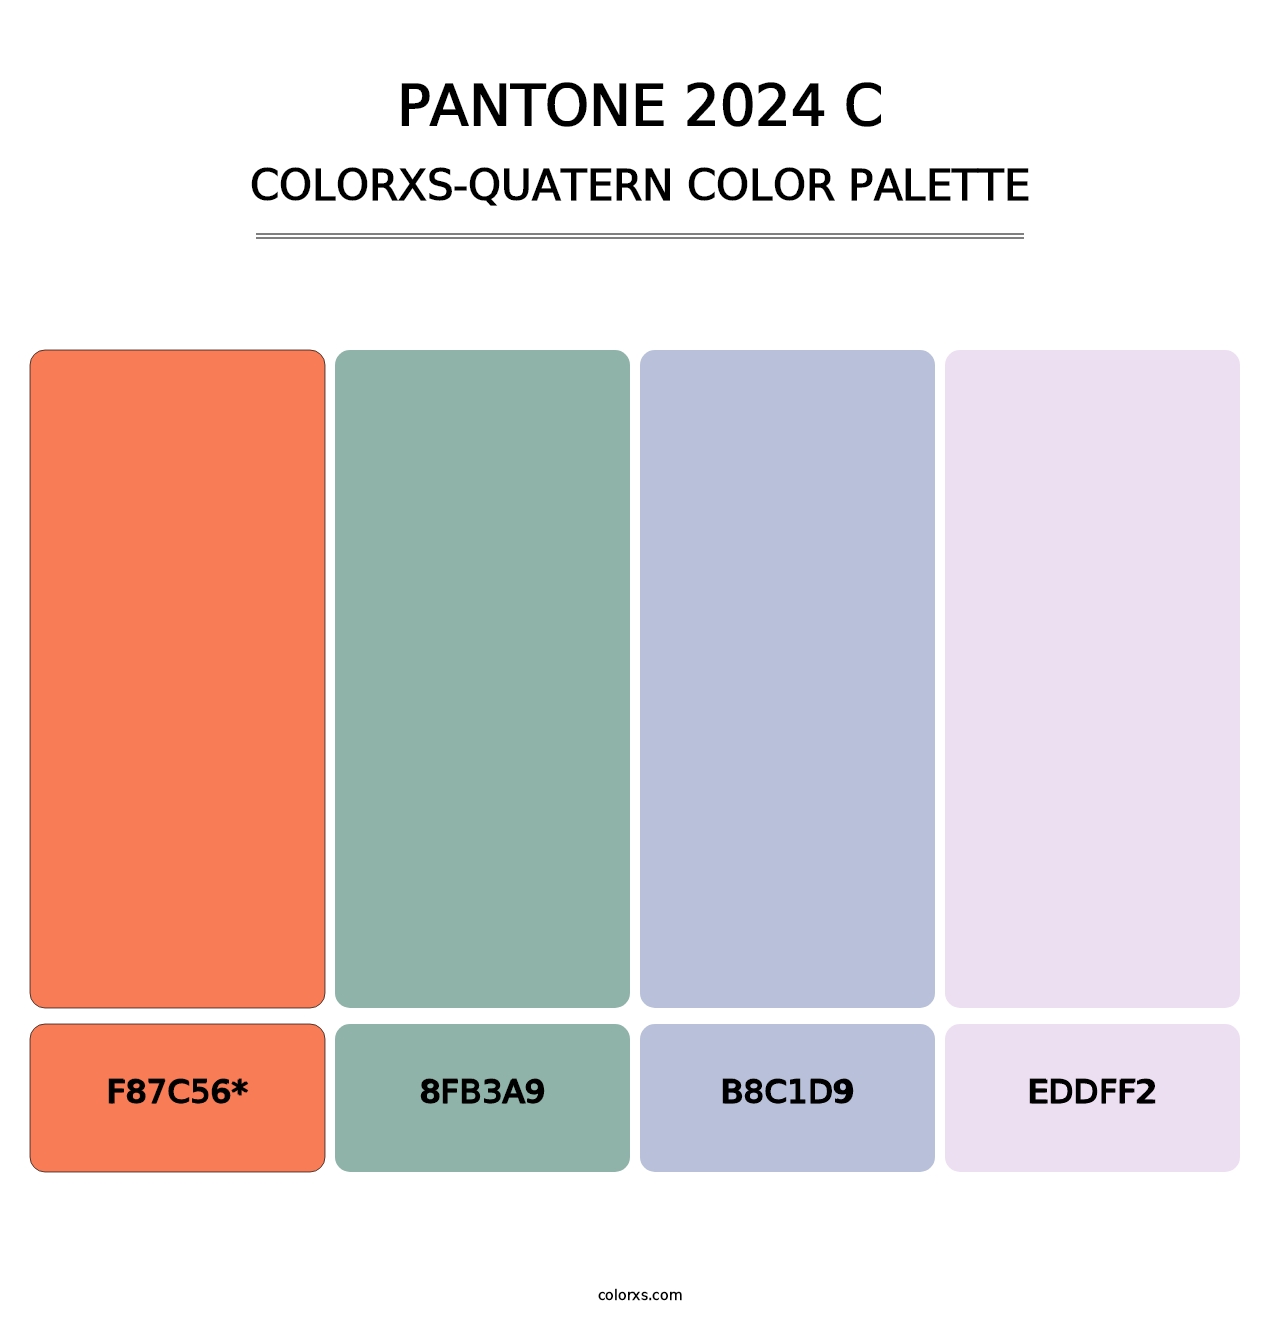 PANTONE 2024 C - Colorxs Quad Palette